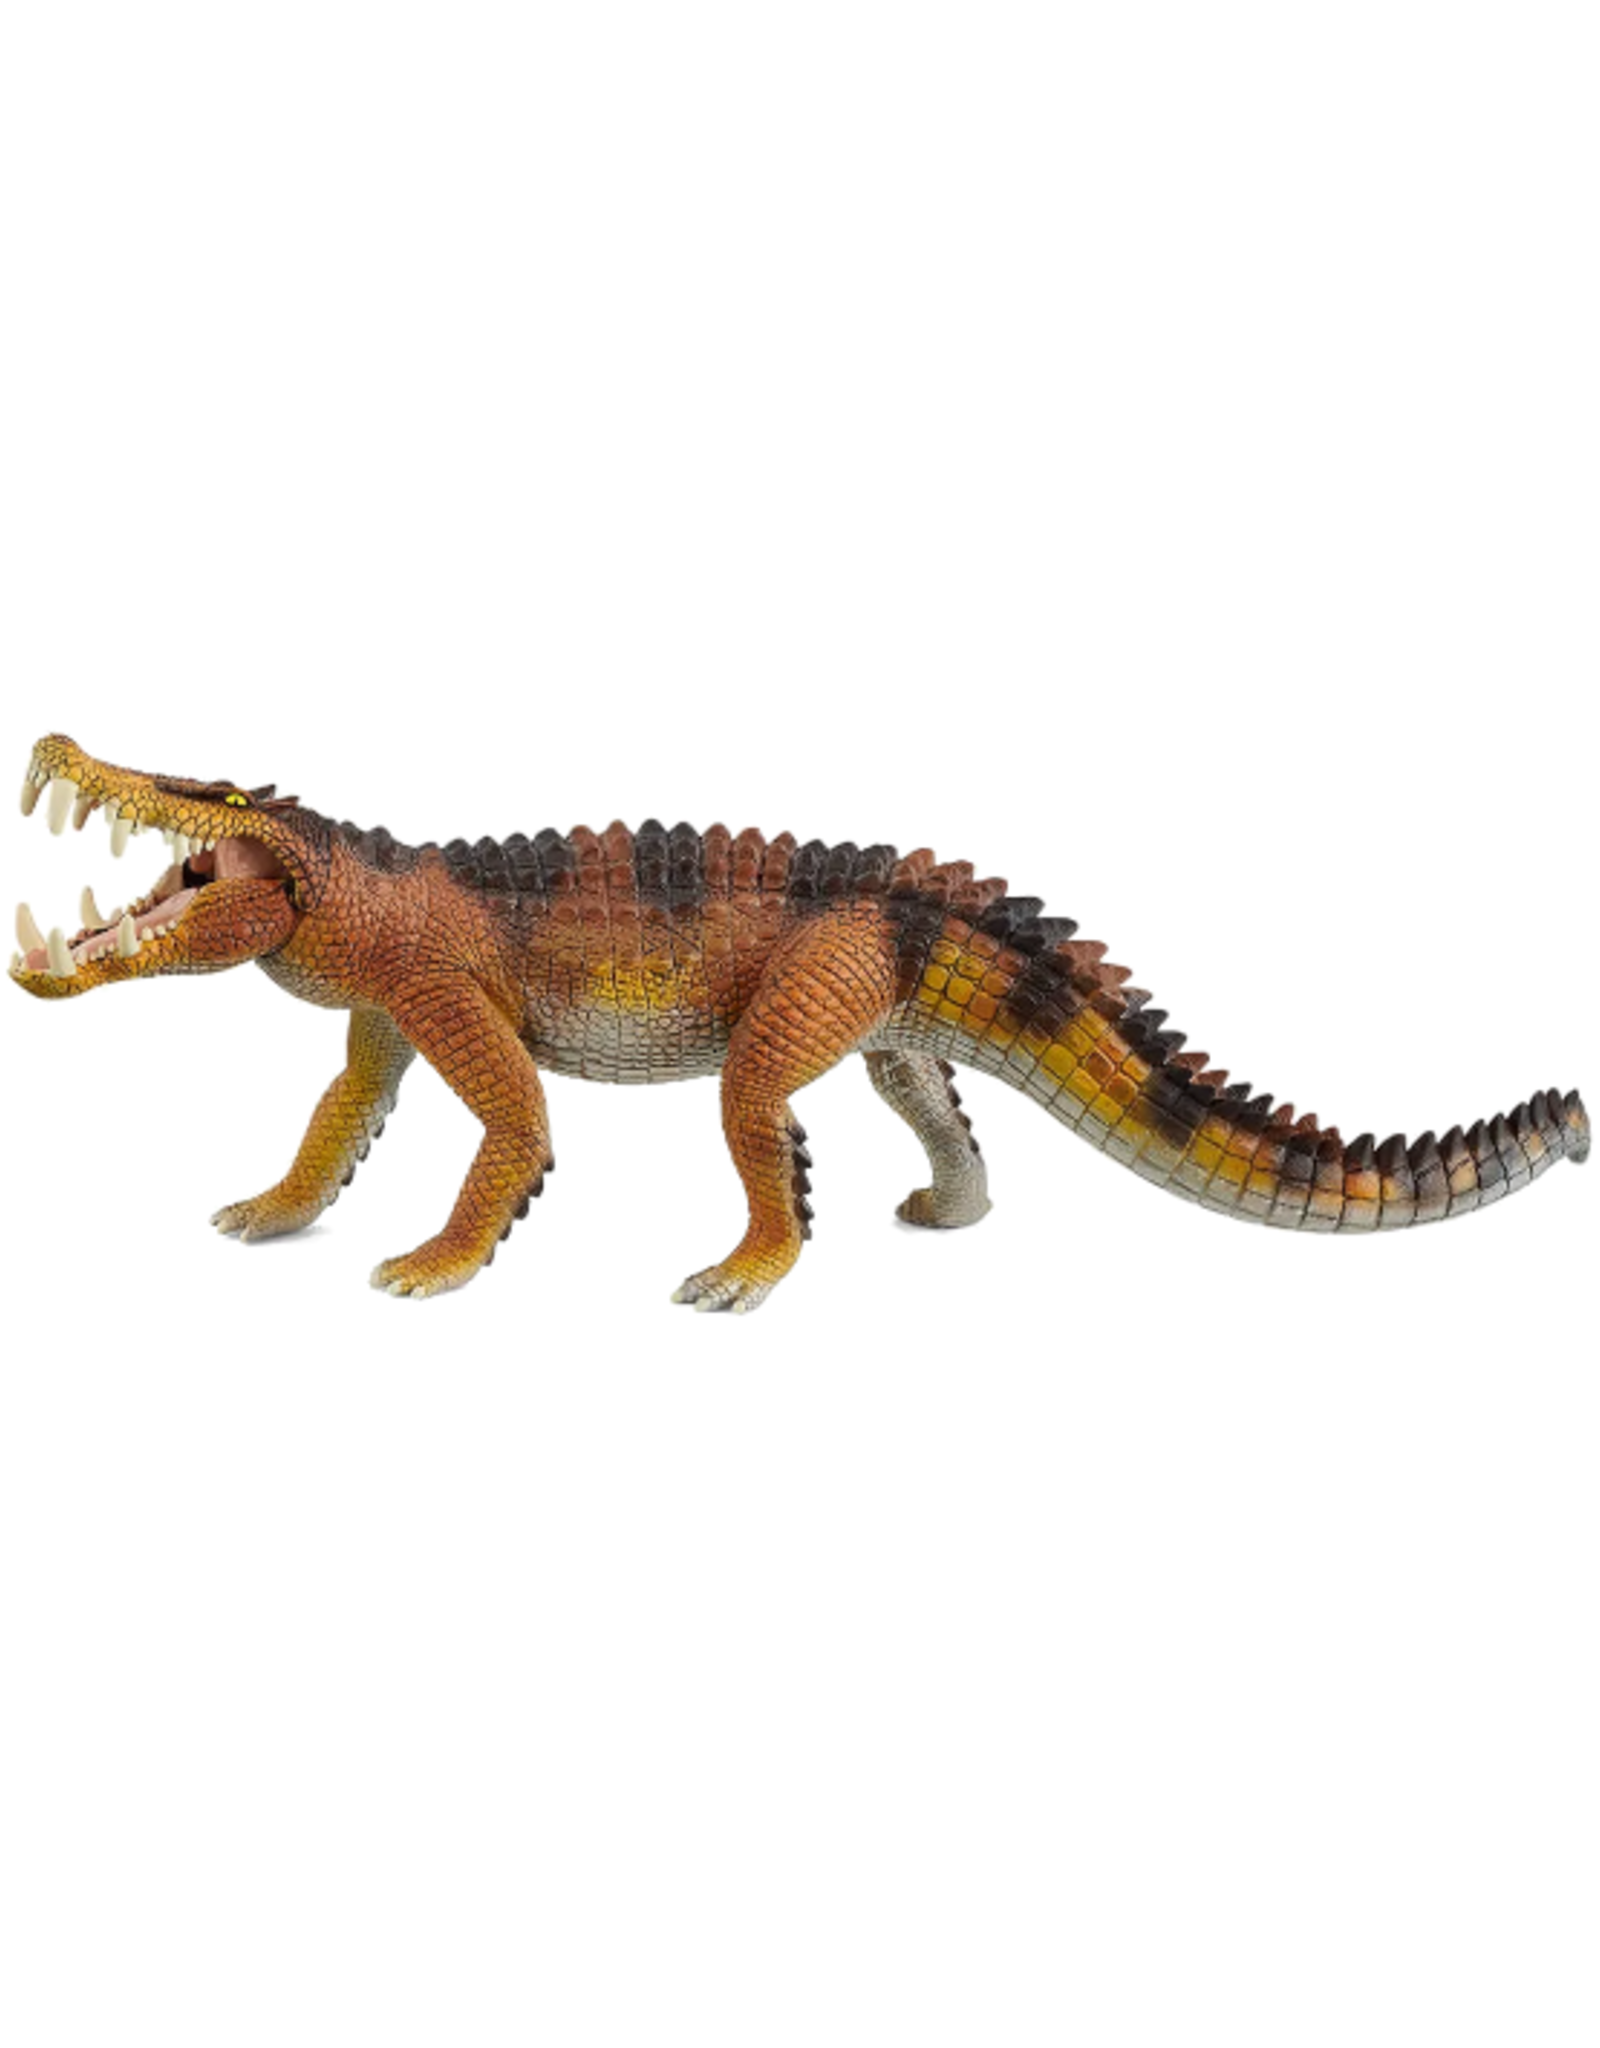 Schleich Schleich - Dinosaurs - 15025 - Kaprosuchus